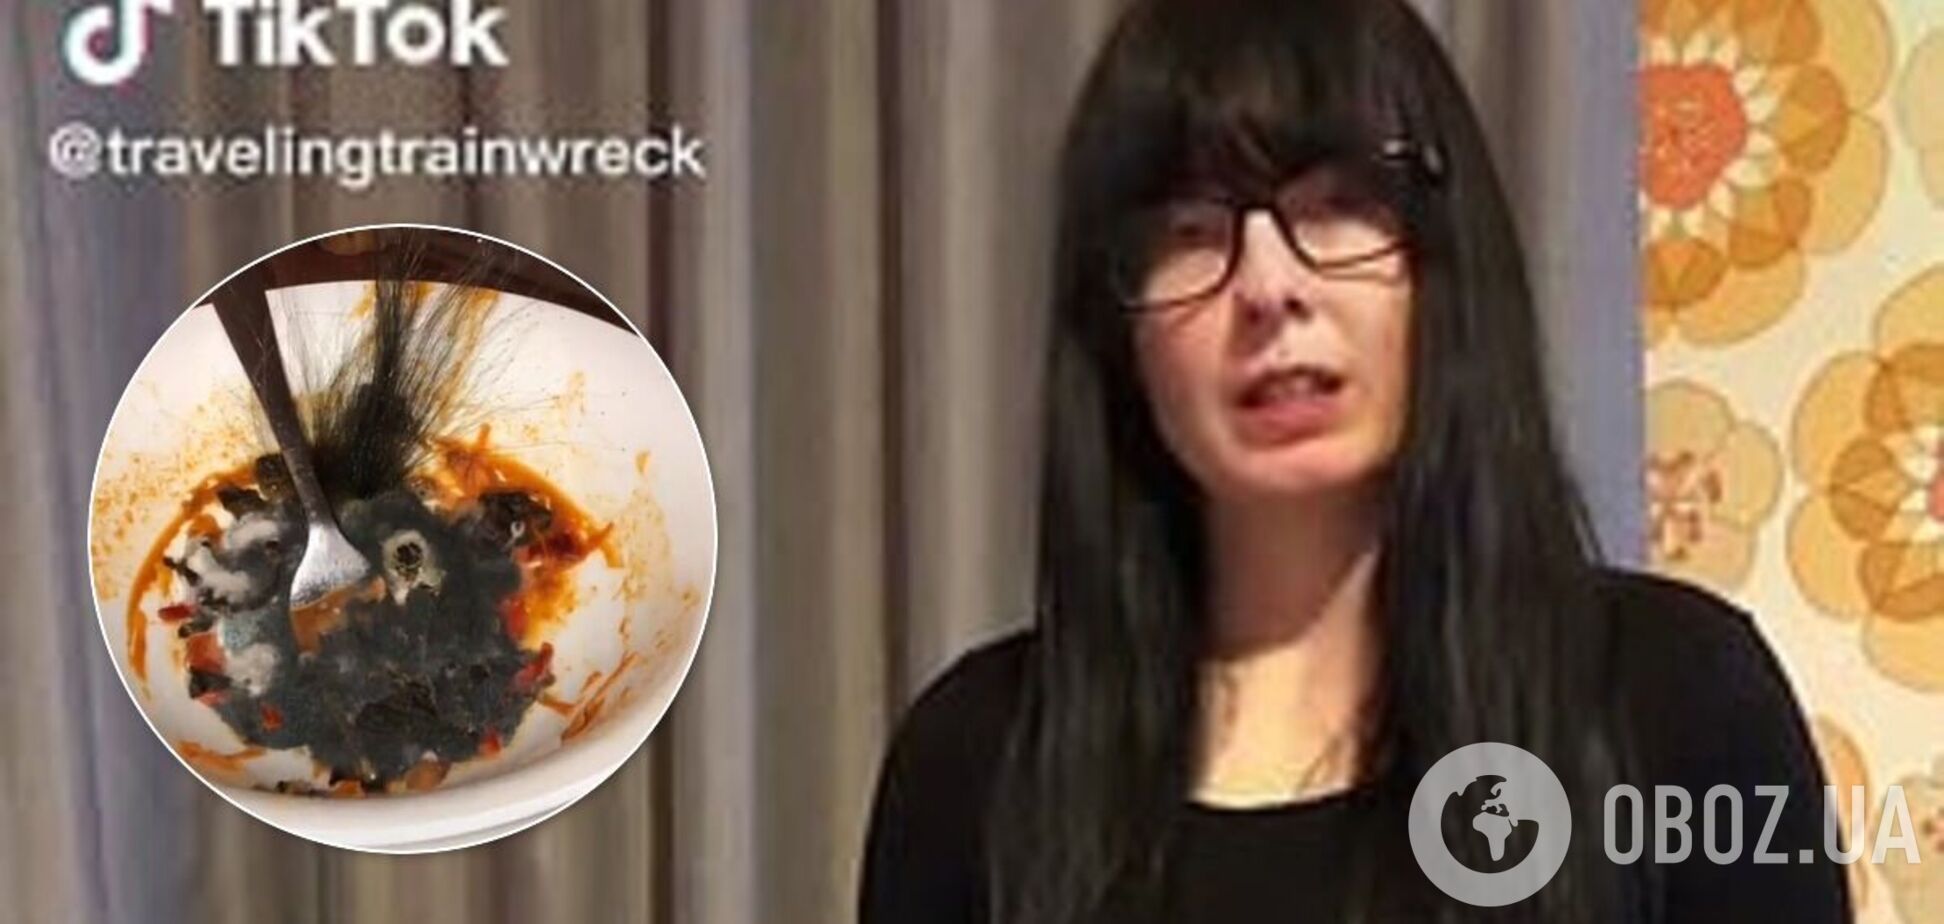 Женщина вызвала отвращение в сети одним фото тарелки с пастой: в ней выросли 'волосы'